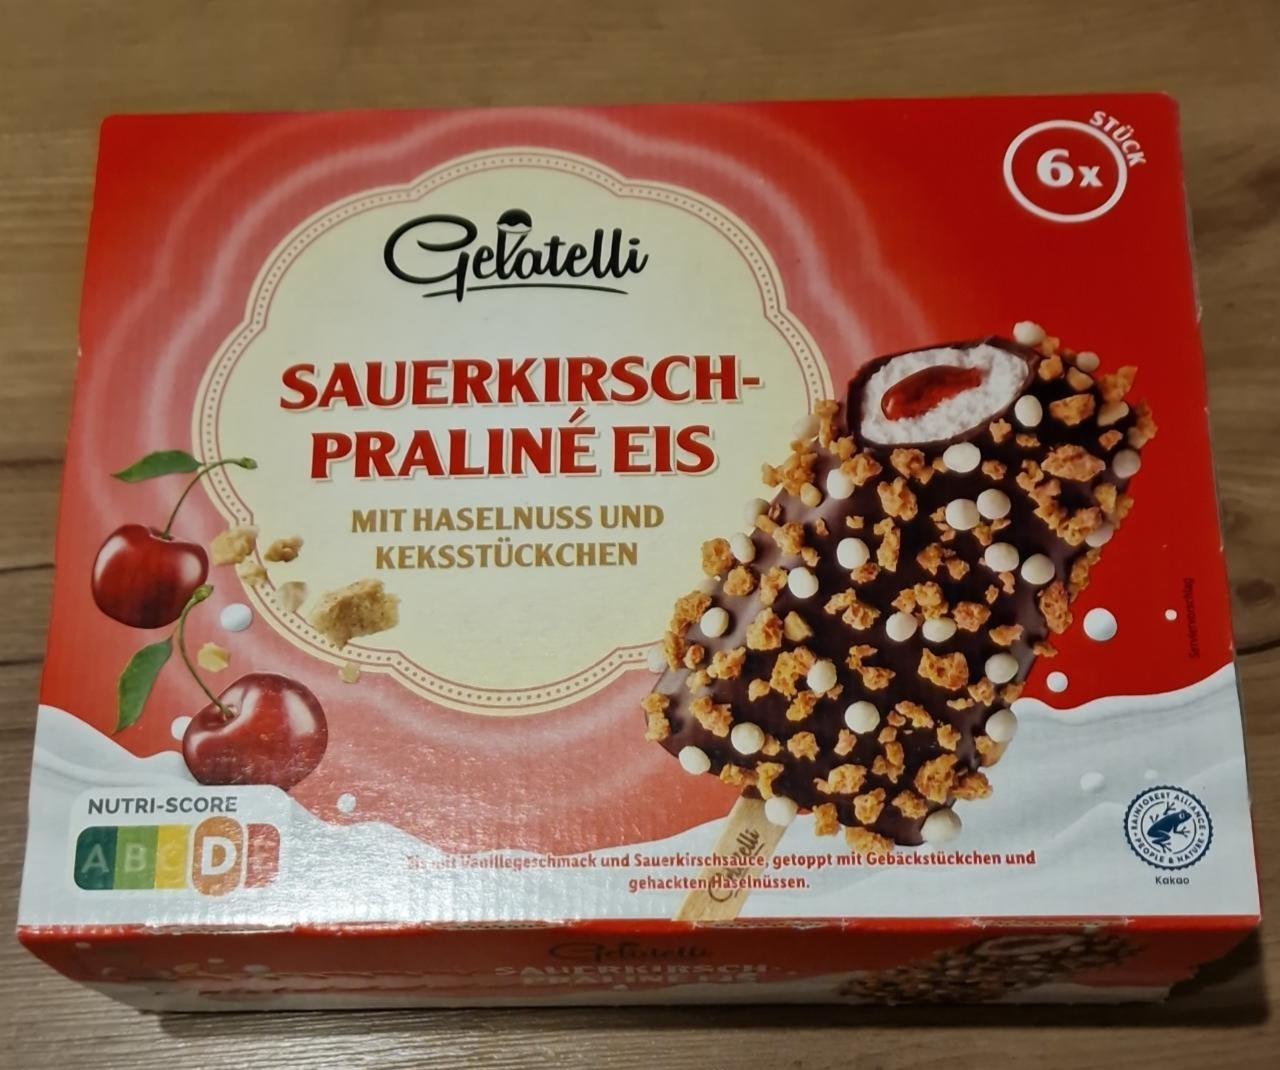 Fotografie - Sauerkirsch-Praliné Eis Gelatelli